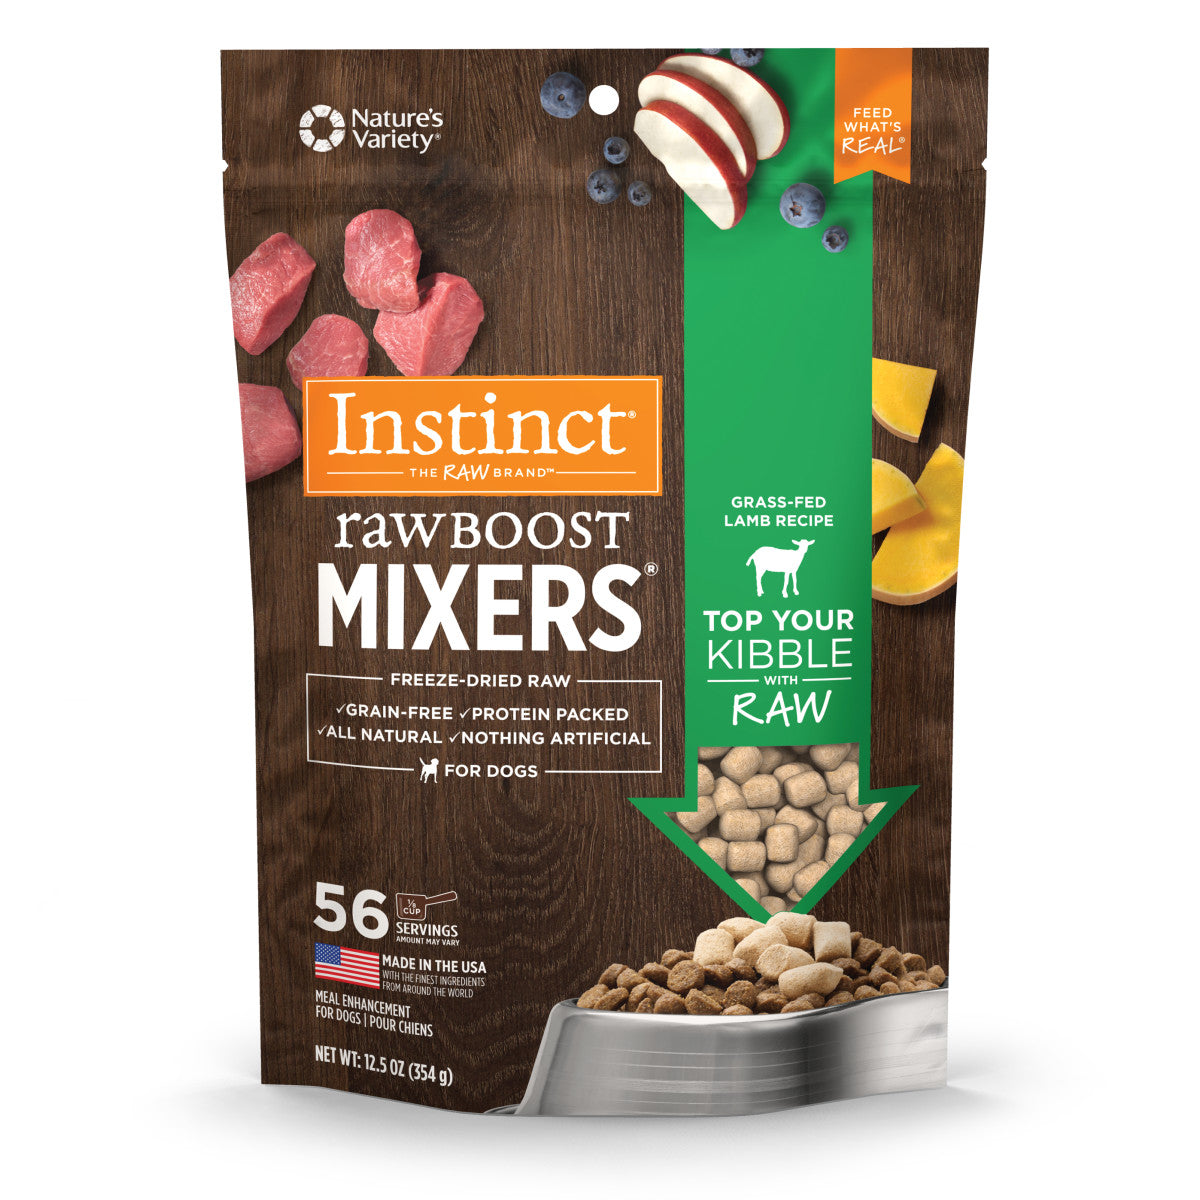 Instinct - Raw Boost Mixers Grass-Fed Lamb Recipe